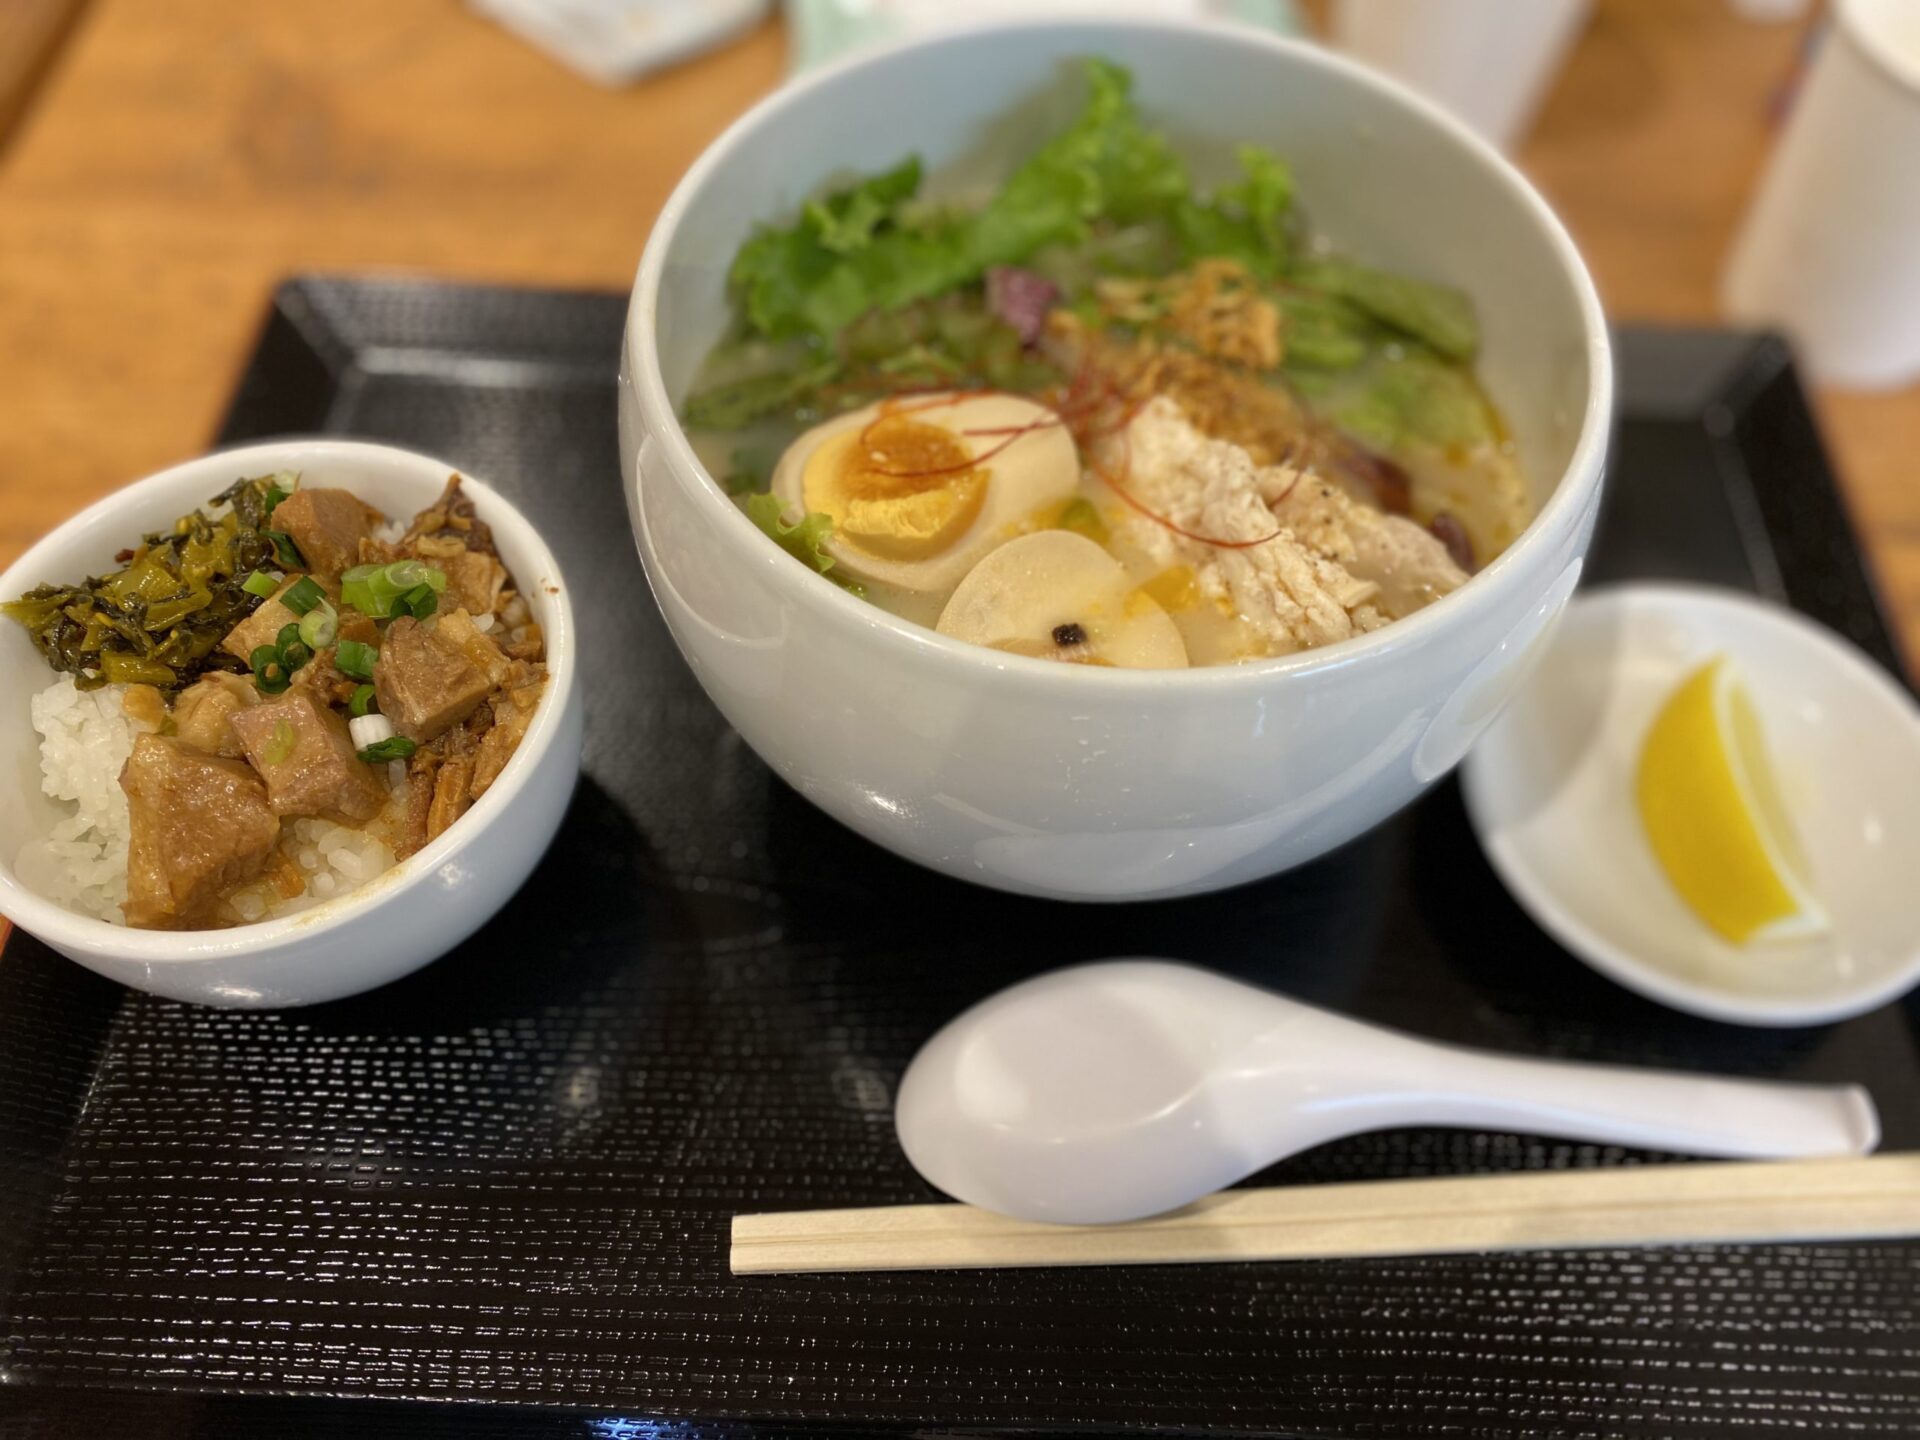 亀有ランチ アリオのフードコート 蔭山 でおしゃれラーメン Kameari Lunch Fashionable Ramen At Ario 17 S Food Court Kageyama 21